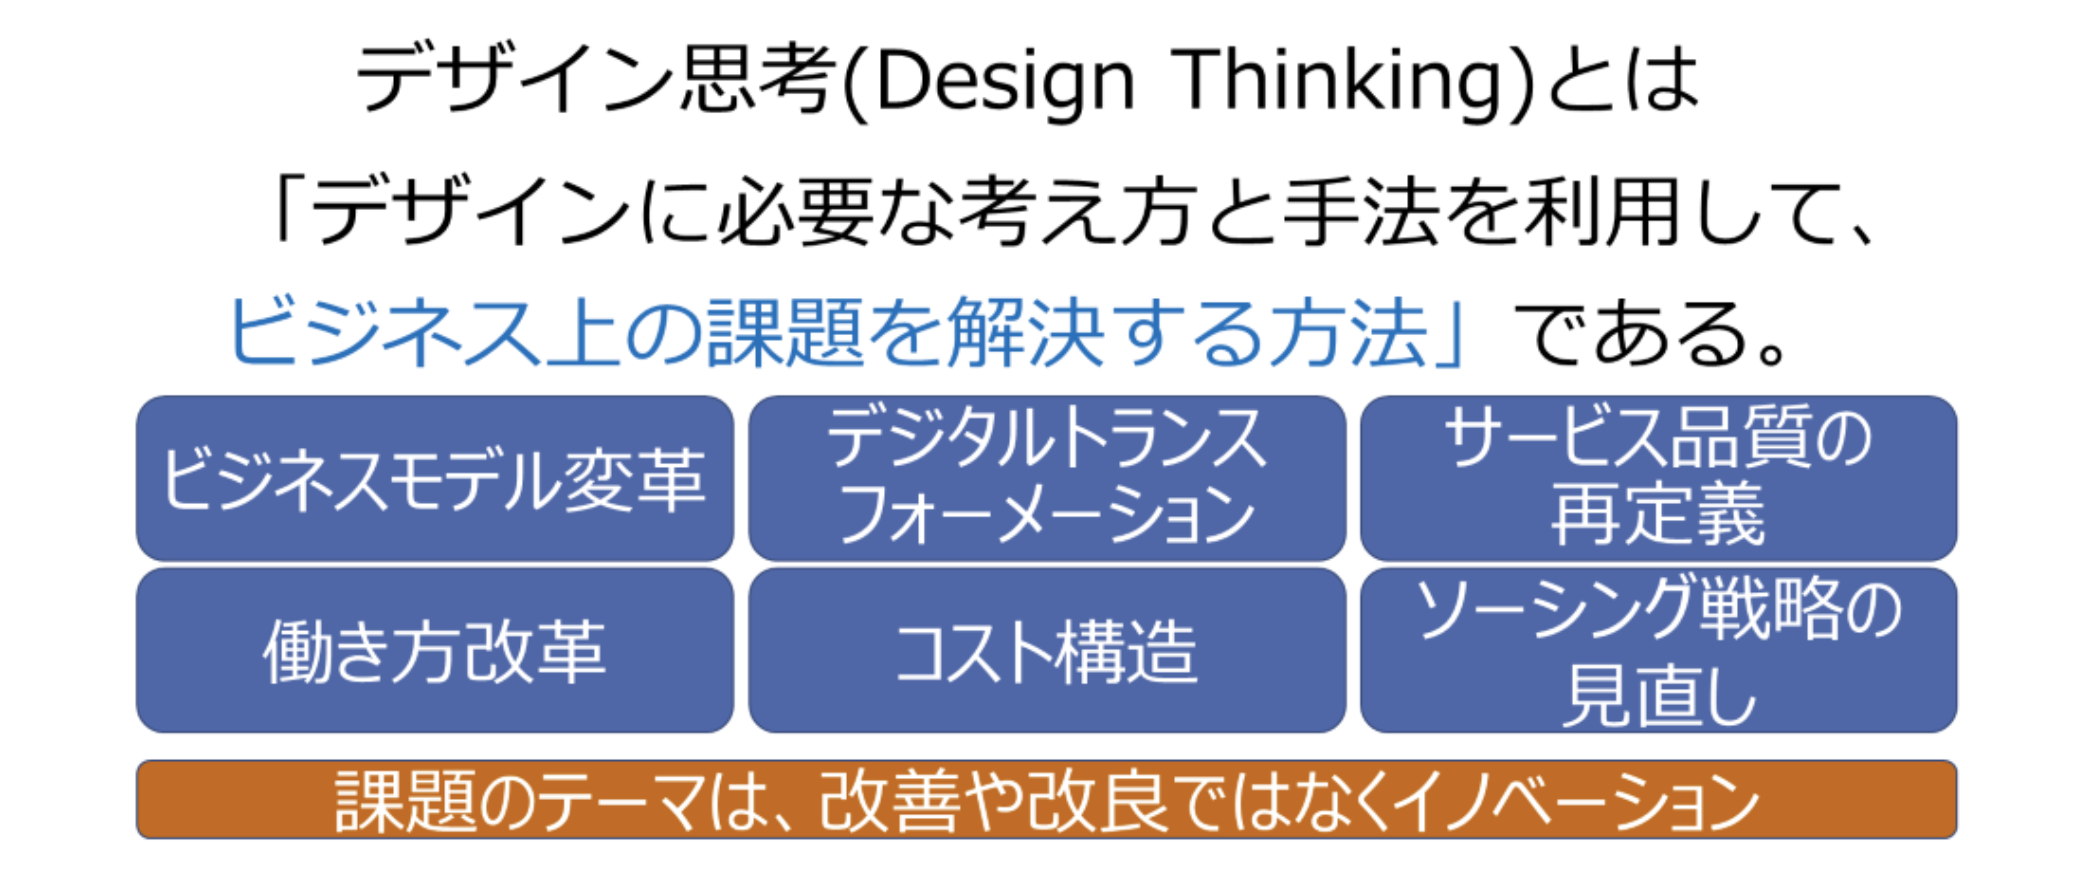 デザイン思考の定義